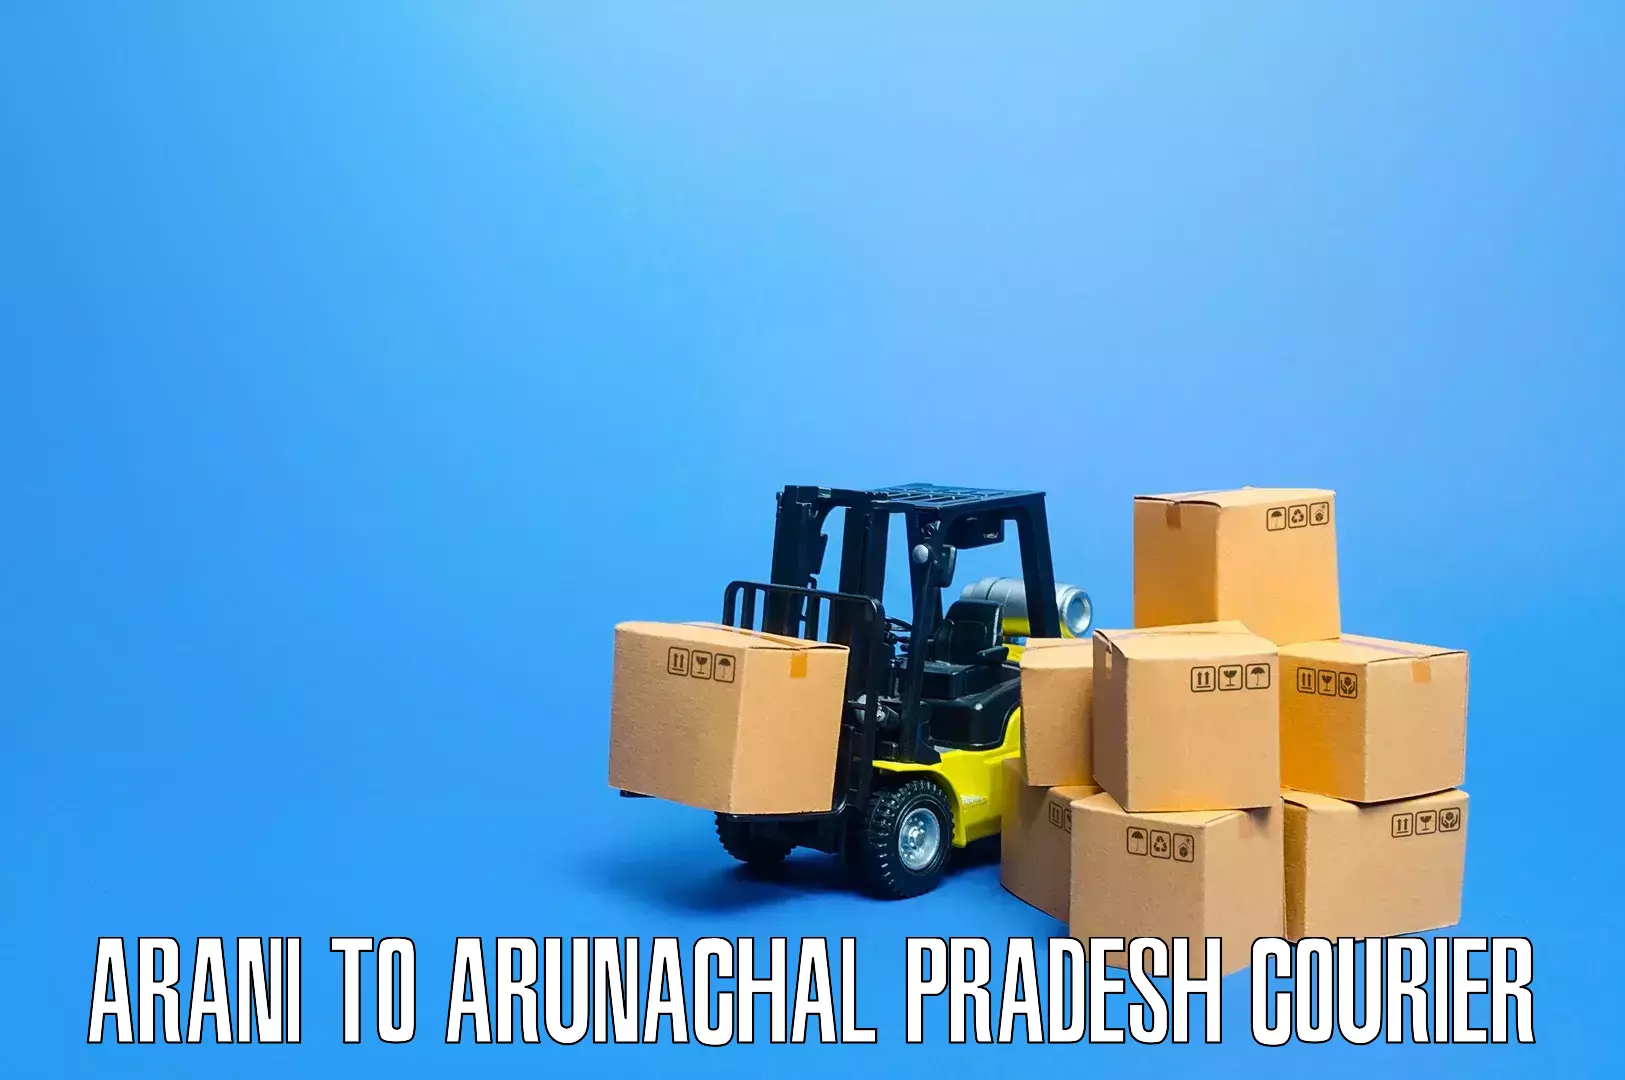 Furniture delivery service Arani to Tirap